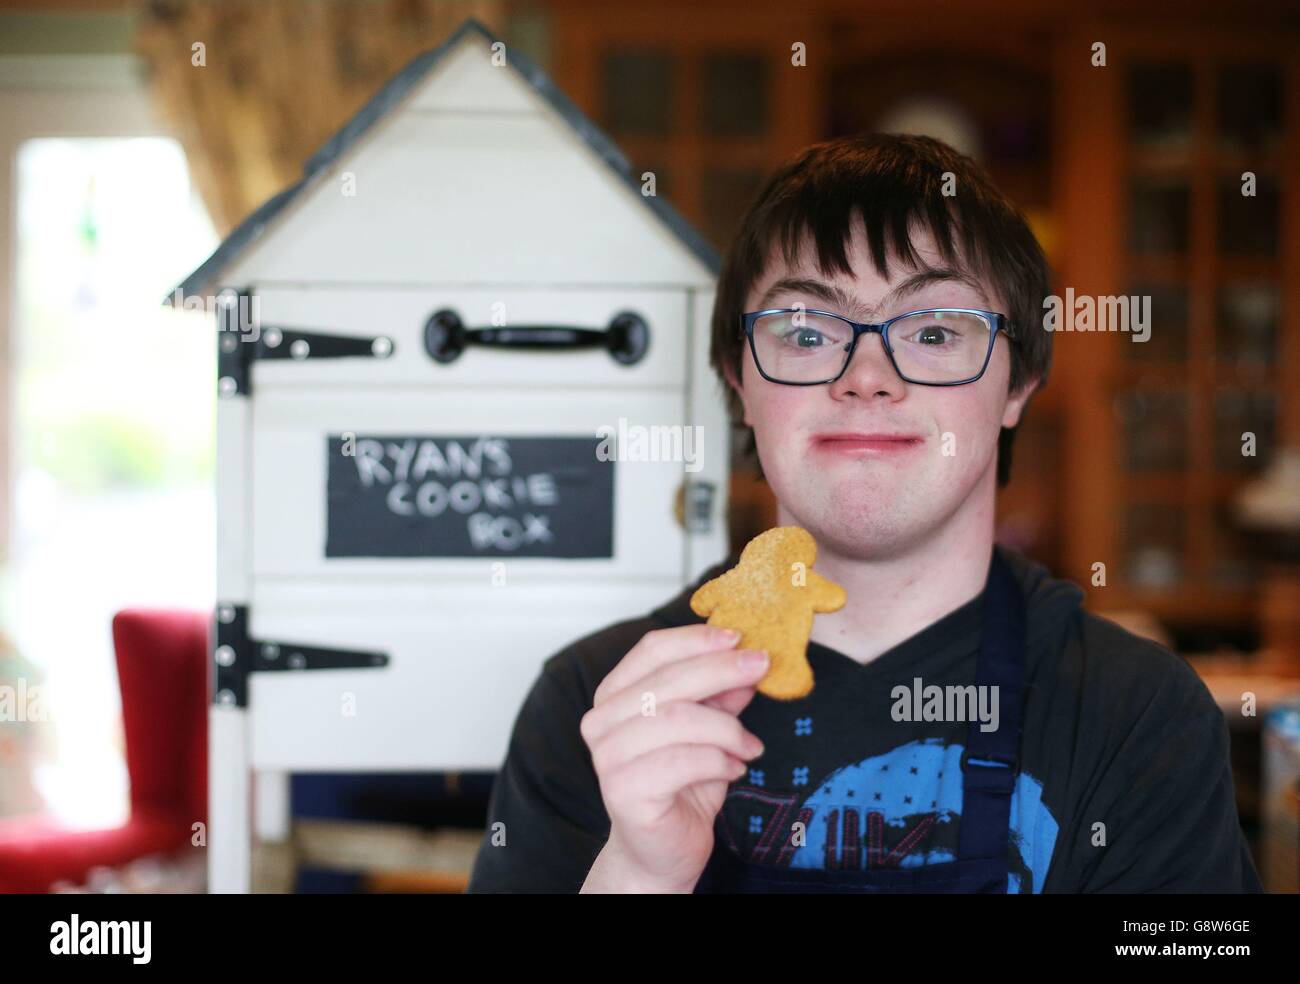 Ryan Bogues, 21 anni, con il suo 'Ryan's Cookie Box' a casa sua a Ballynahinch in Co Down. Foto Stock